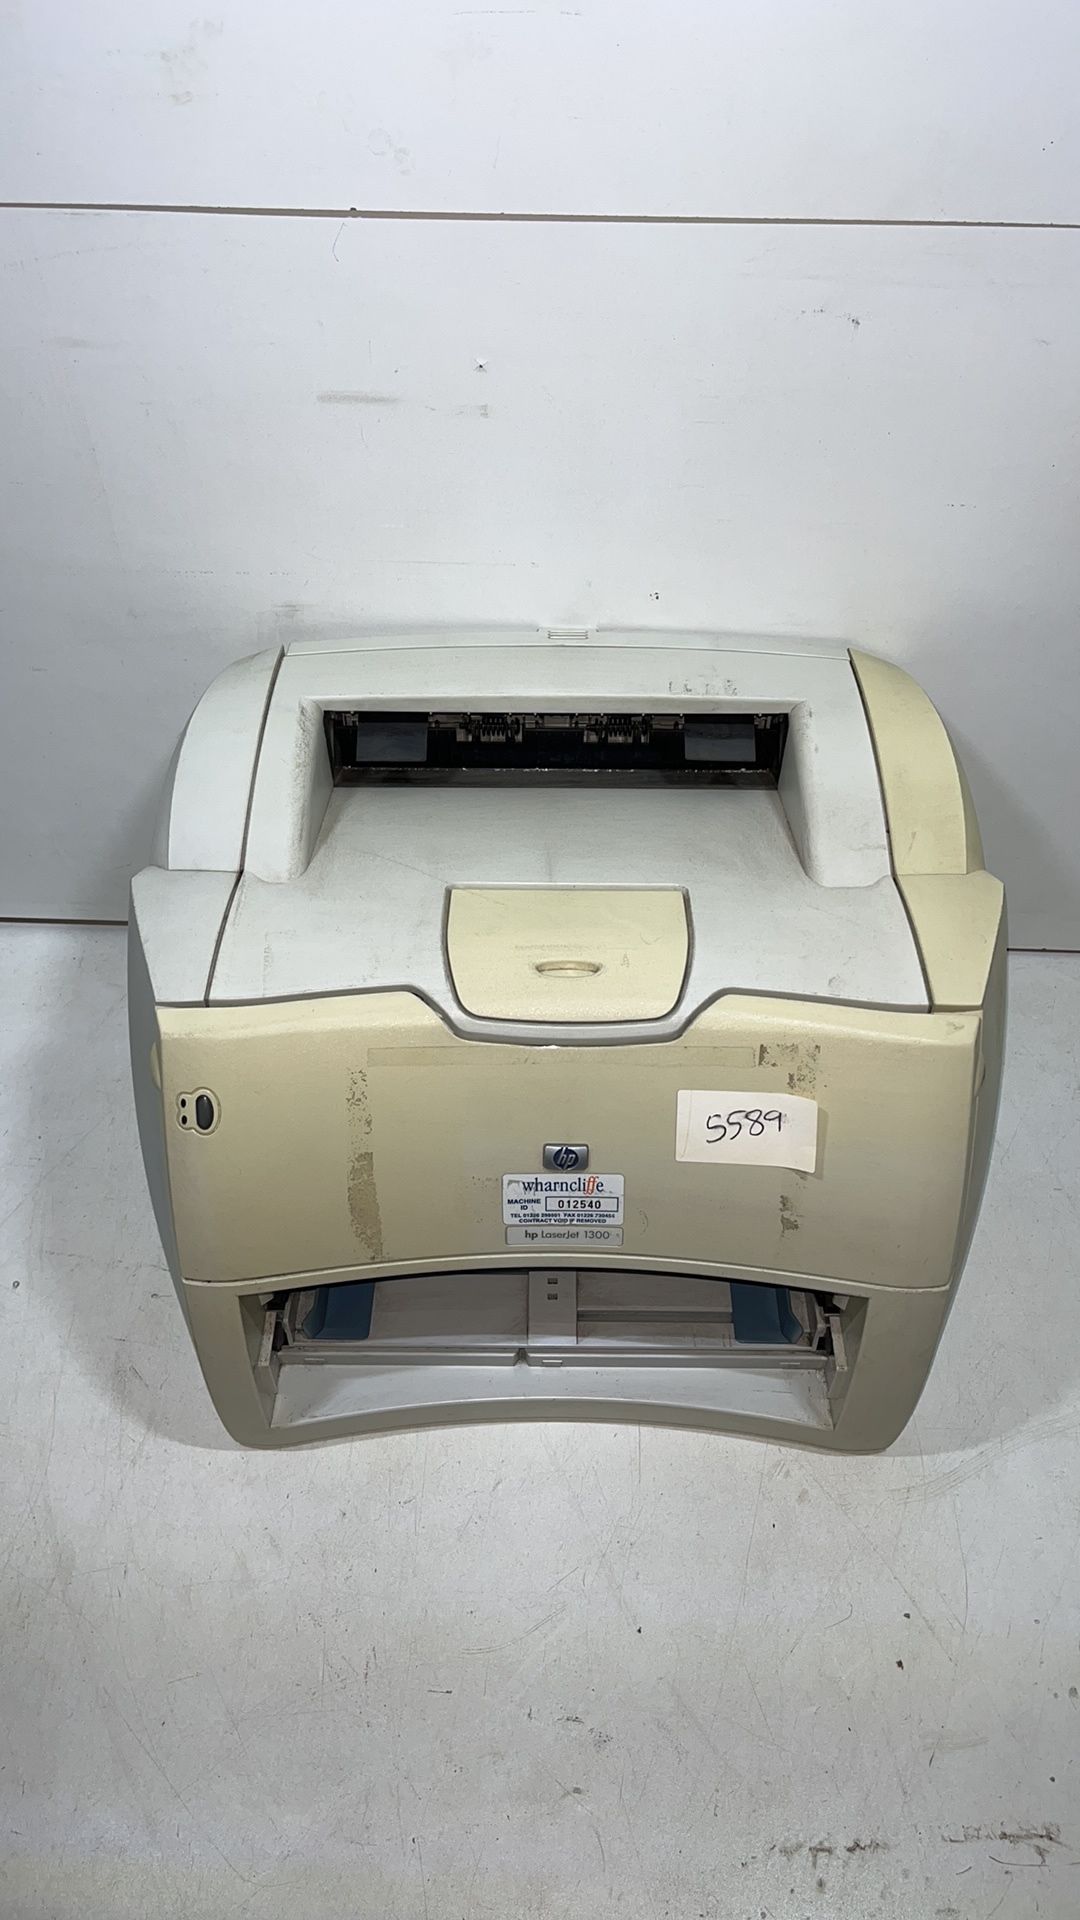 HP LaserJet 1300 Printer - Image 3 of 8